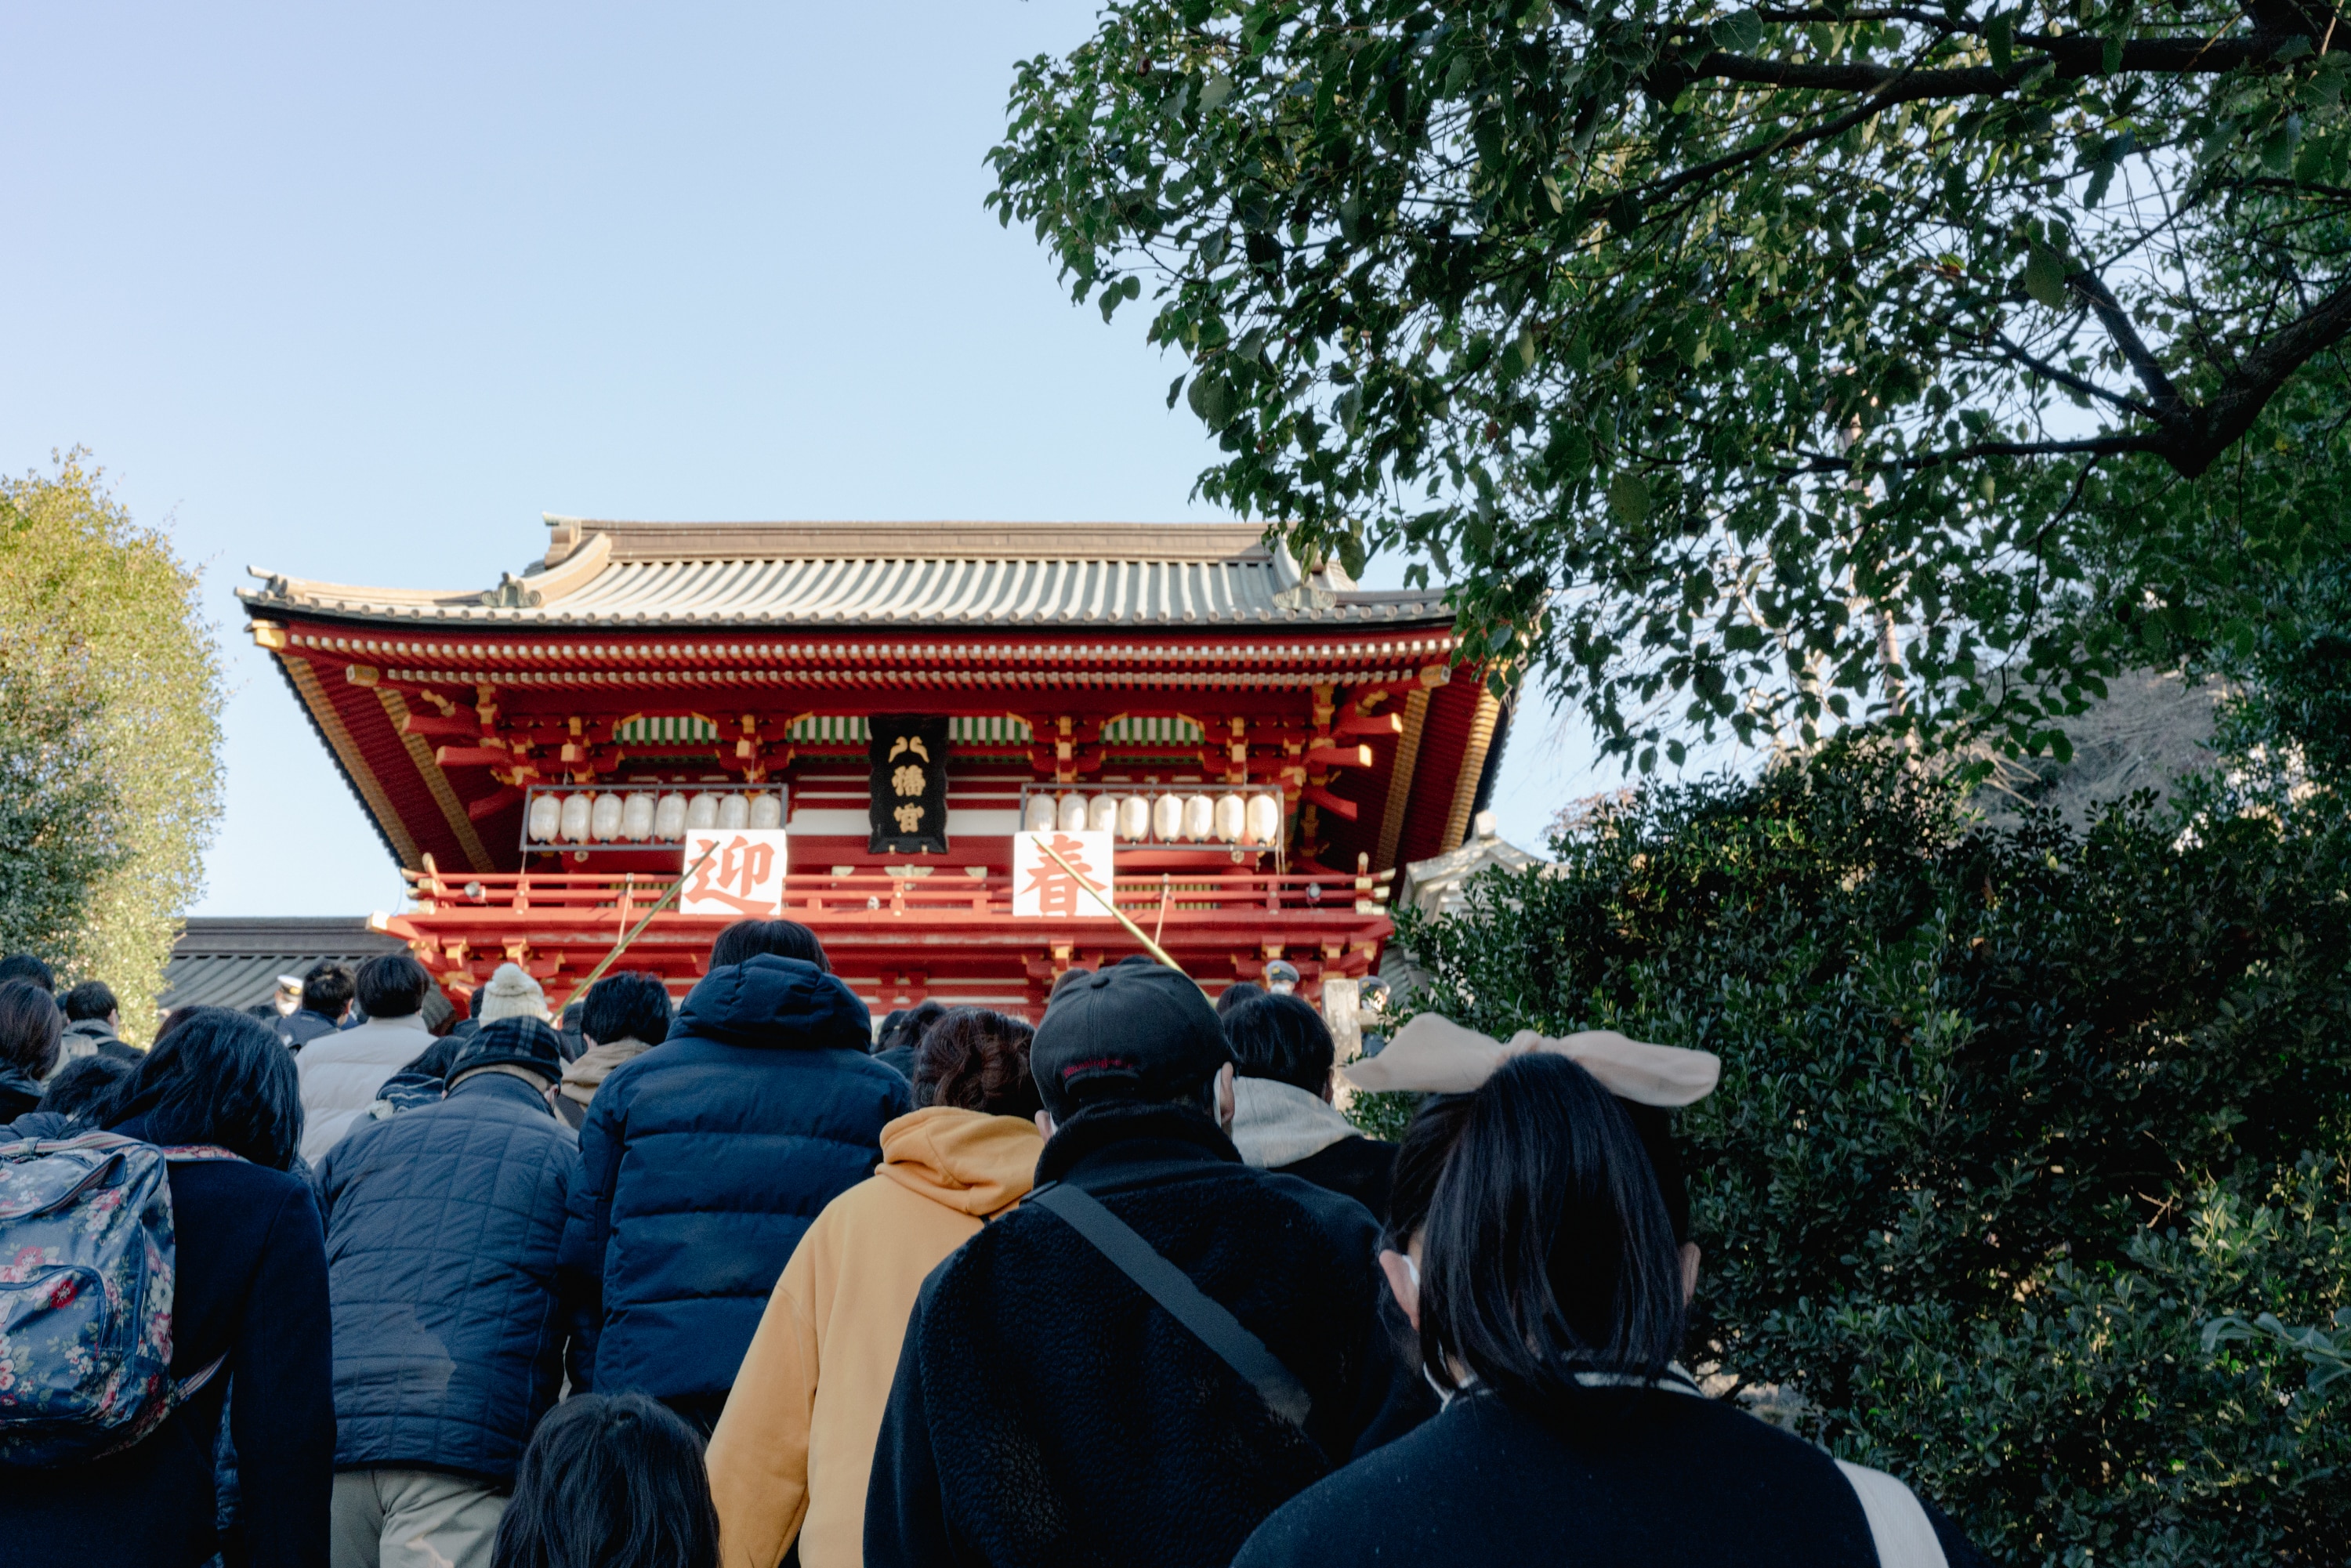 2023.01 - Tsurugaoka hachimangu shrine, Kamakura, Kanagawa